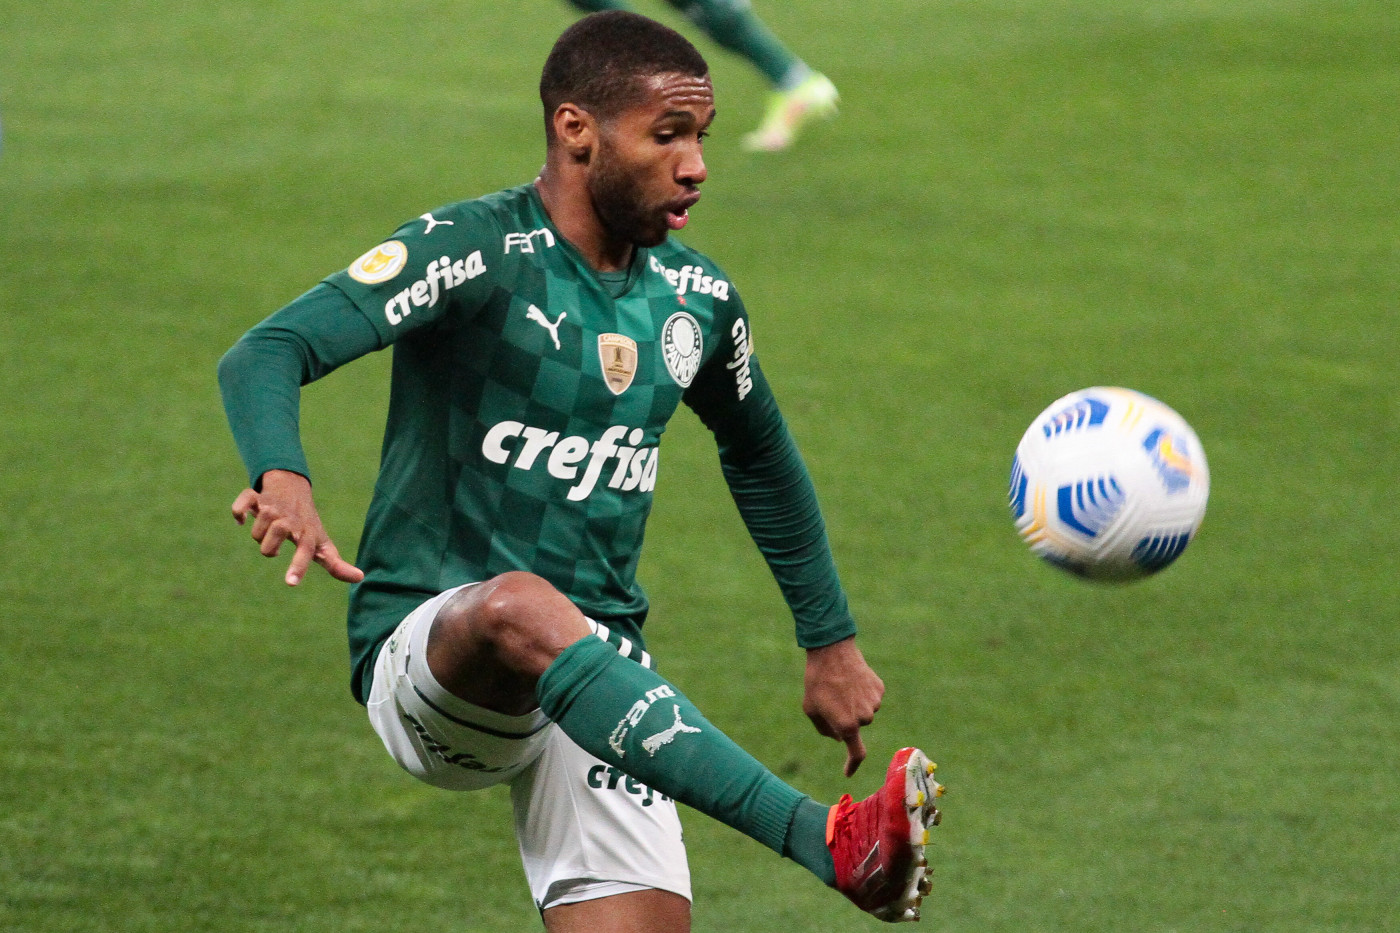 Wesley domina a bola durante partida do Palmeiras